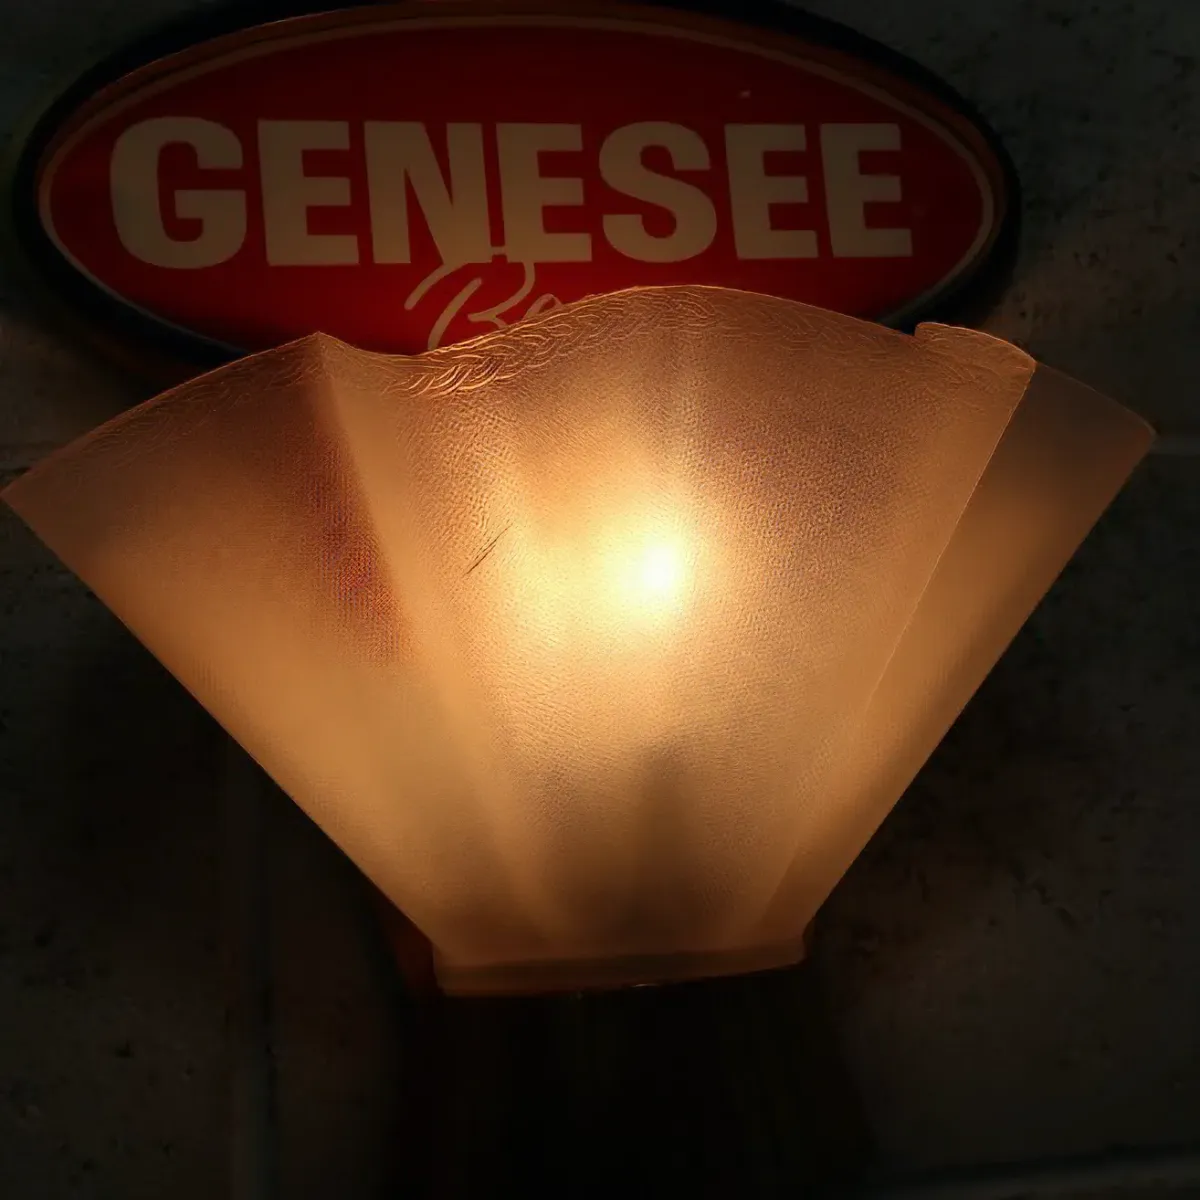 GENESEE Beer ビンテージ ライトサイン